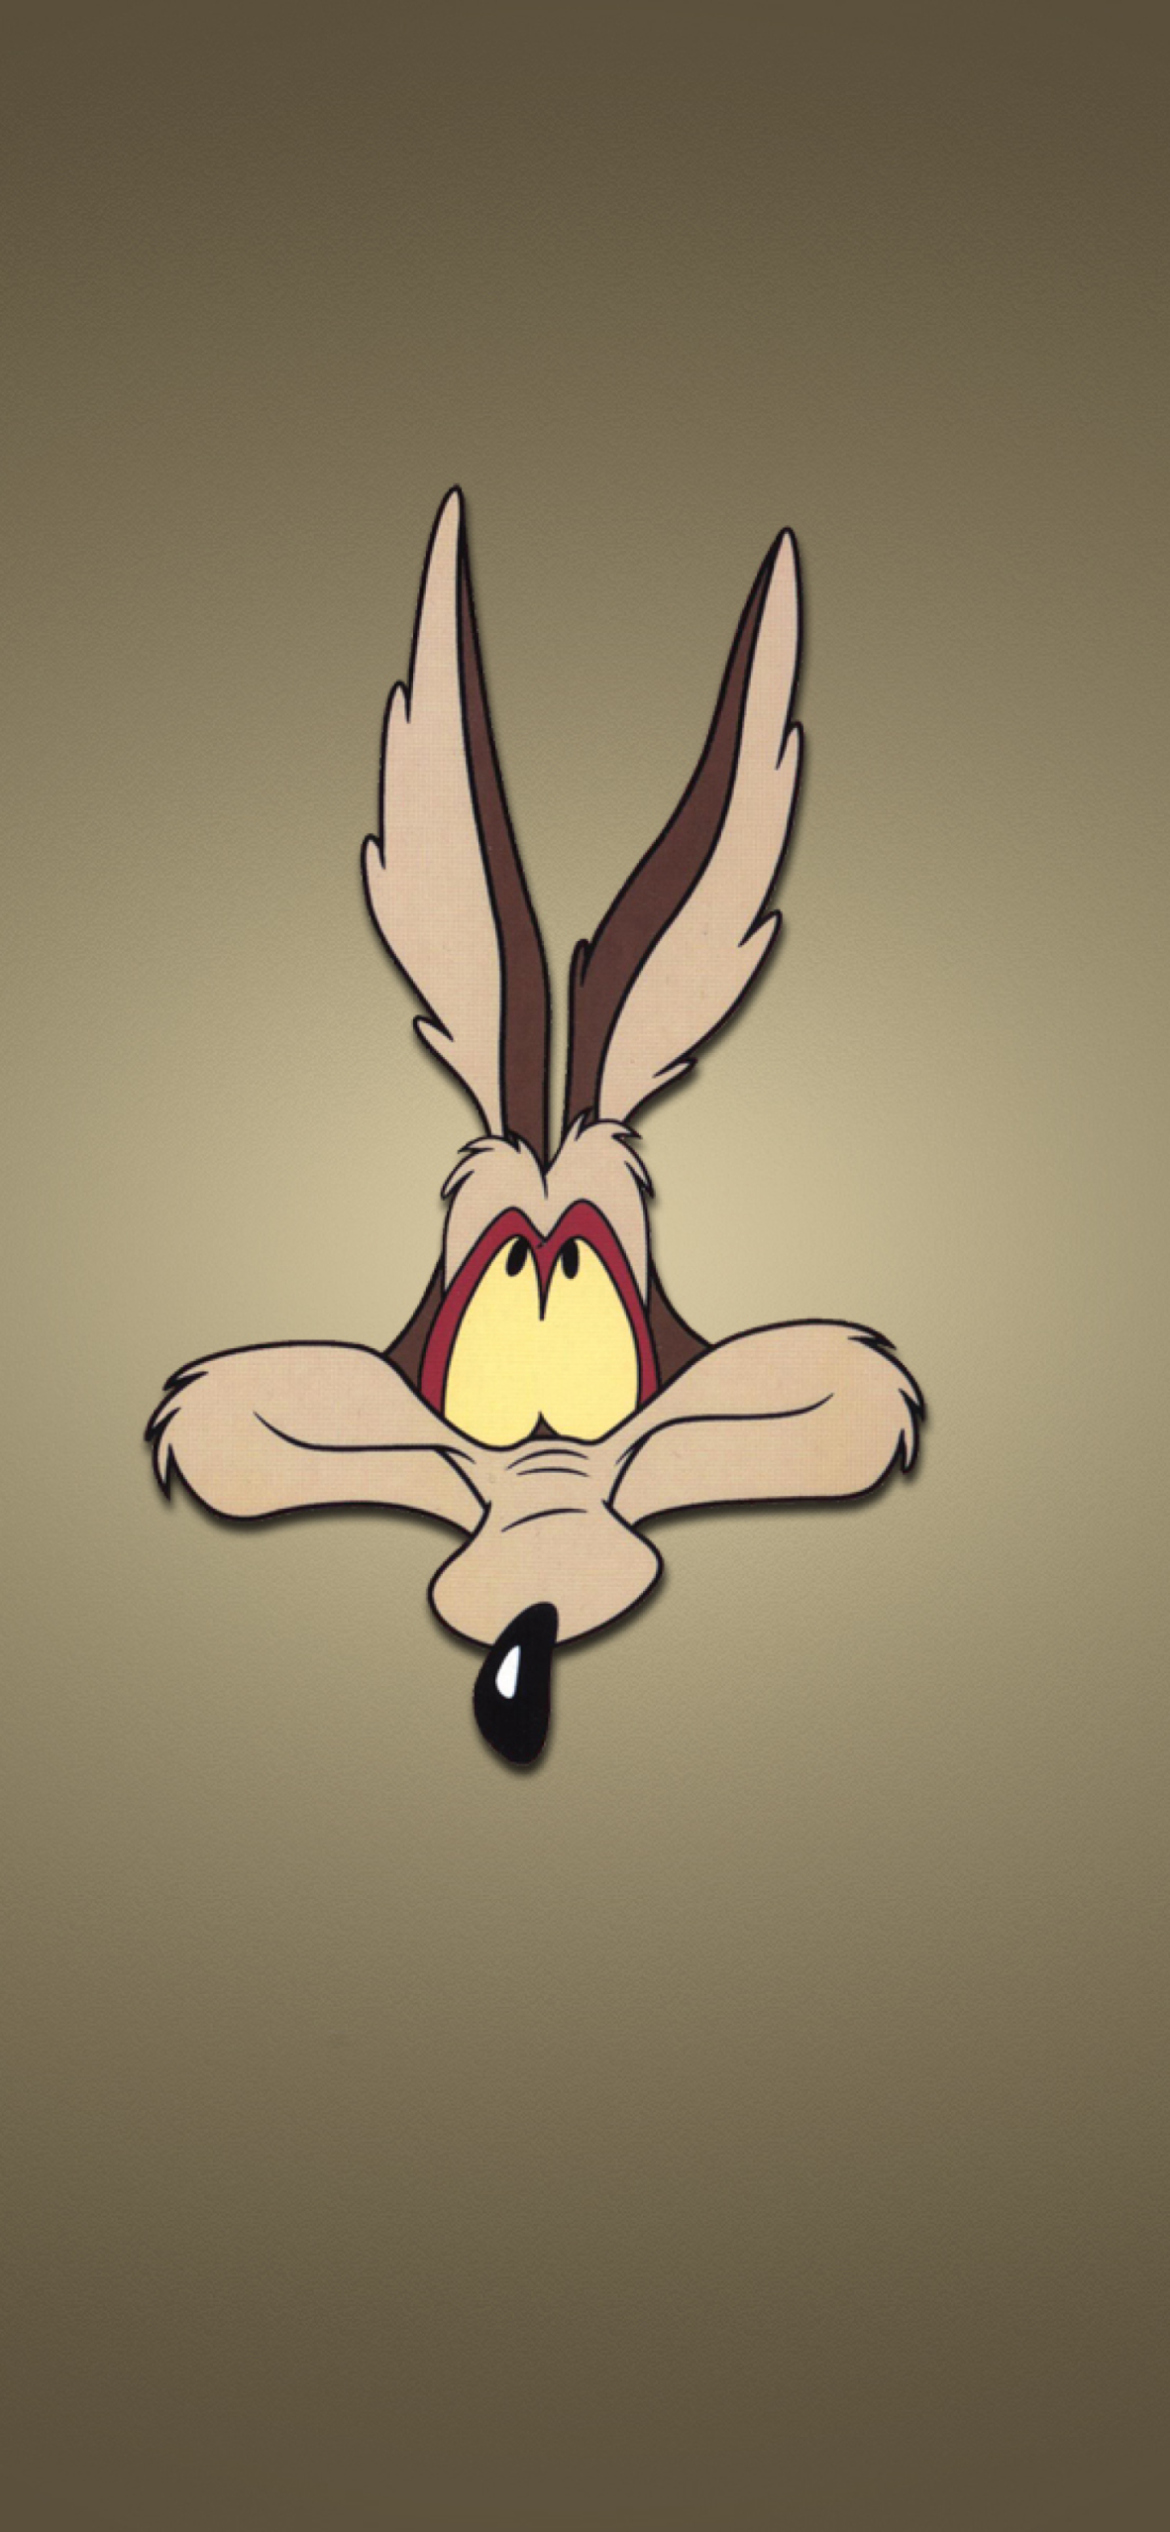 Das Looney Tunes Wile E. Coyote Wallpaper 1170x2532